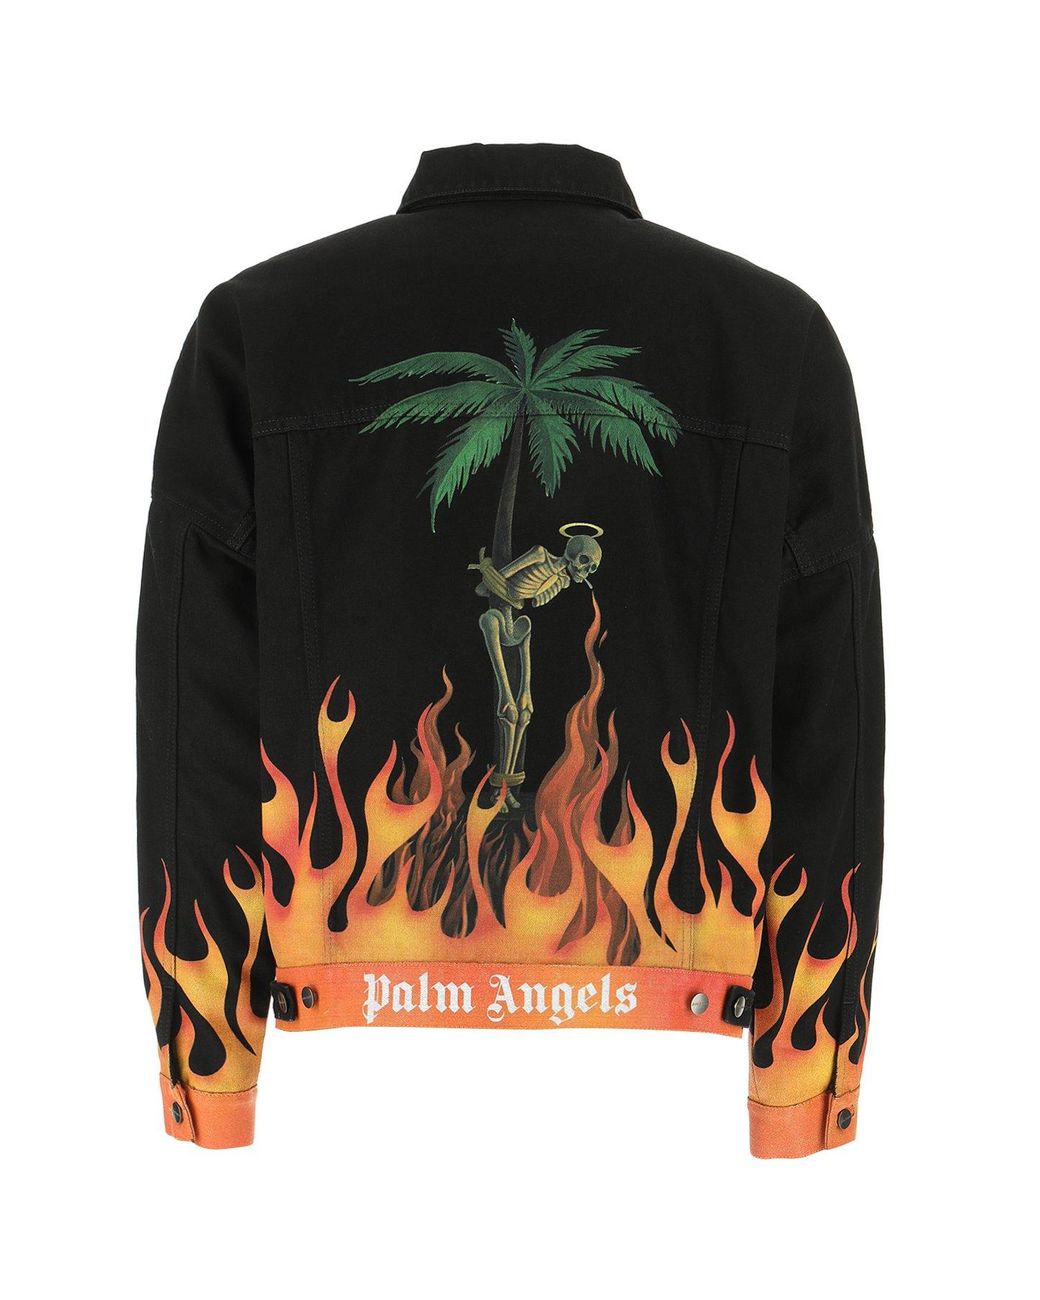 Palm Angels Men's Black Flames Denim Jacket